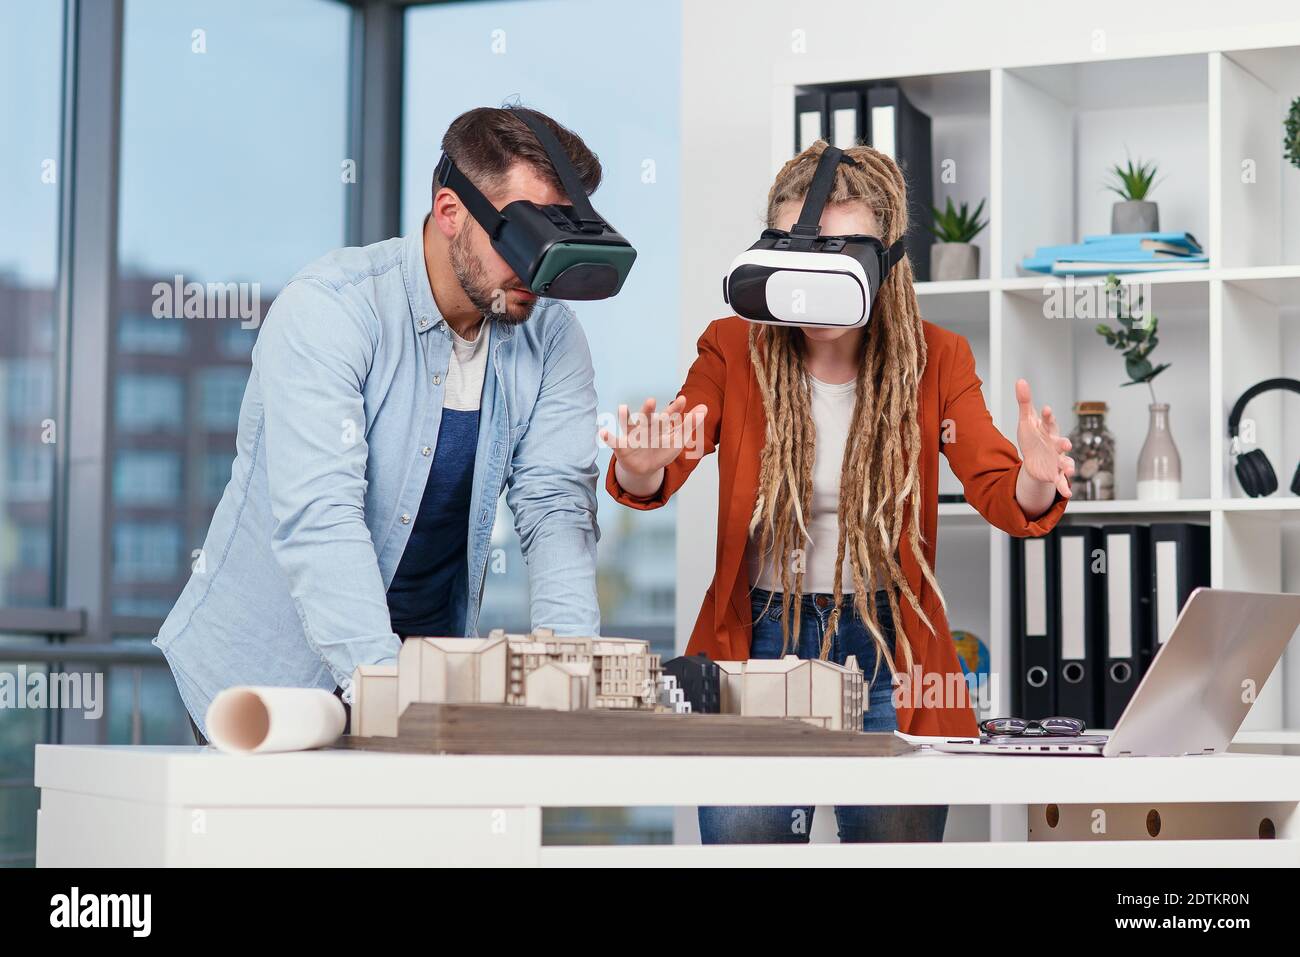 Architecte professionnel travaillant au bureau et le port d'un casque VR, il est l'affichage d'une interface de réalité virtuelle Banque D'Images